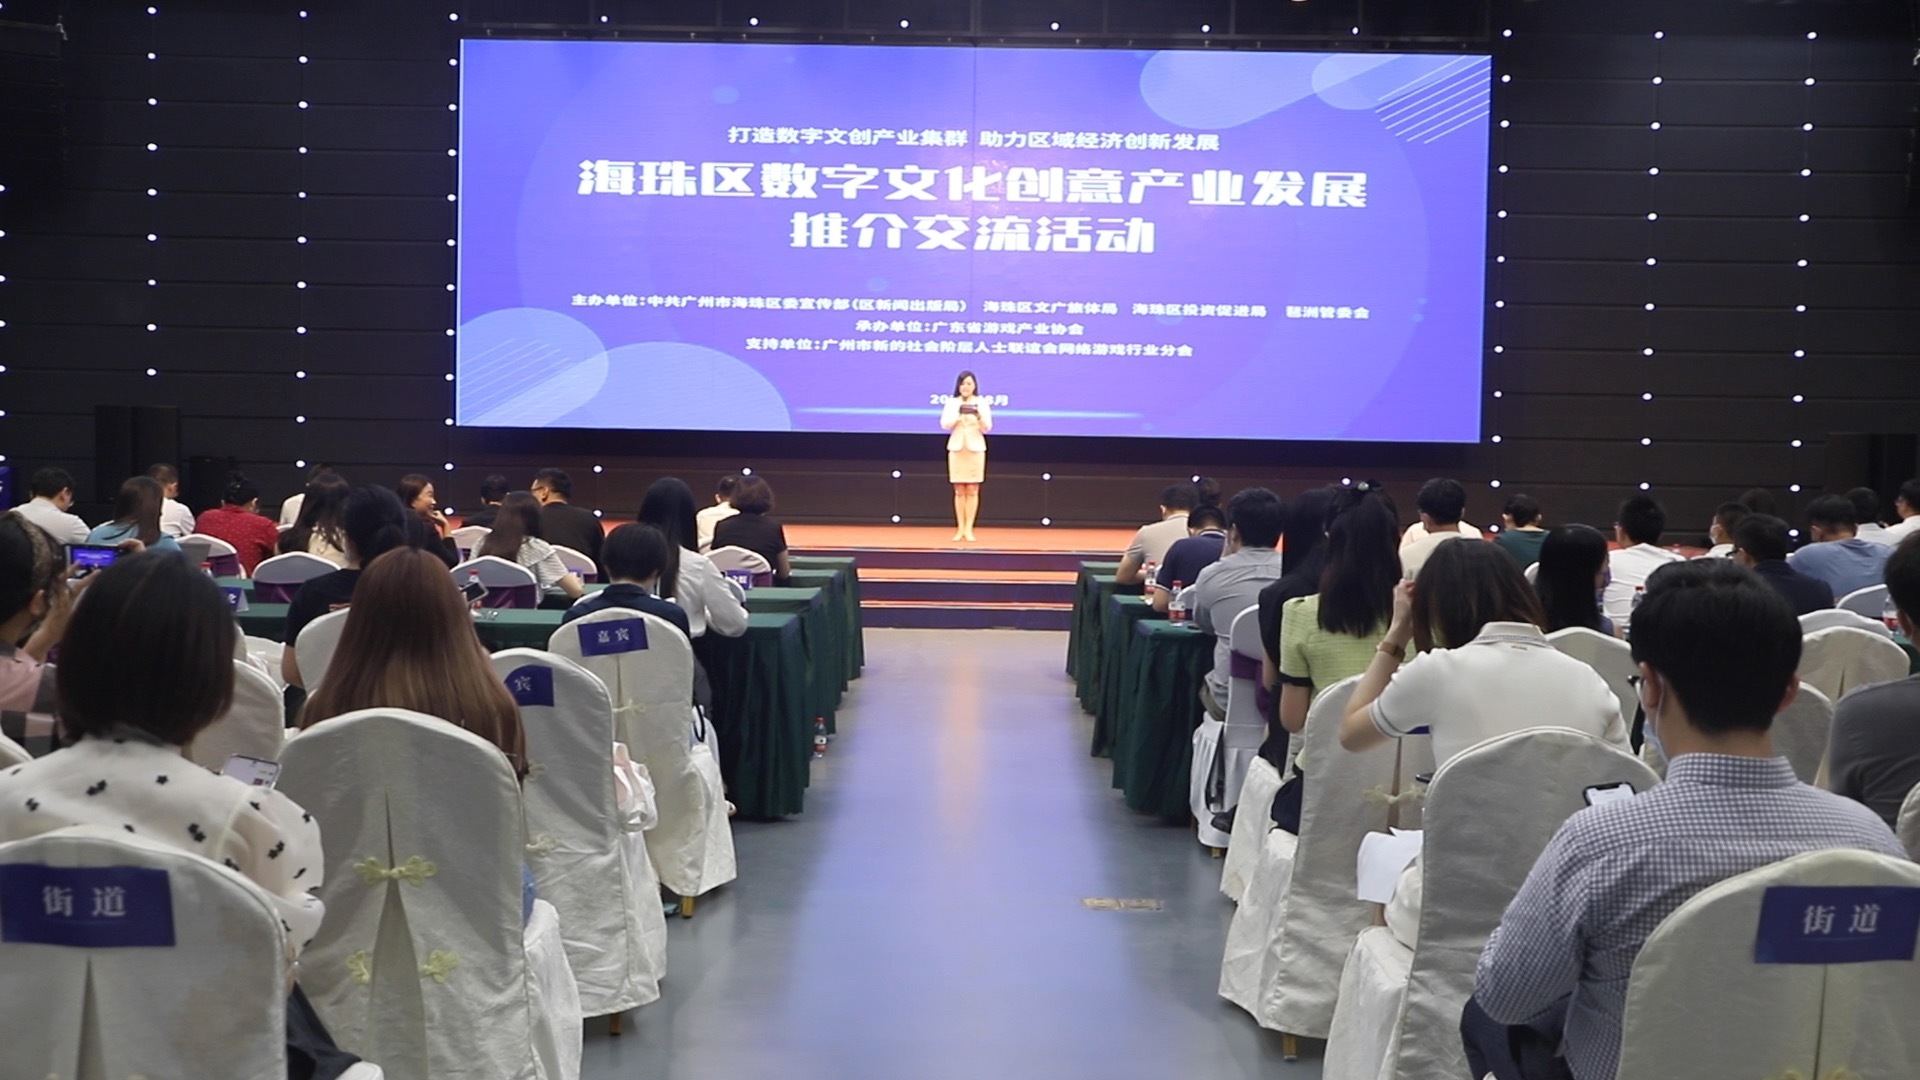 助推数字文创产业，这场活动在广州海珠创投小镇举行